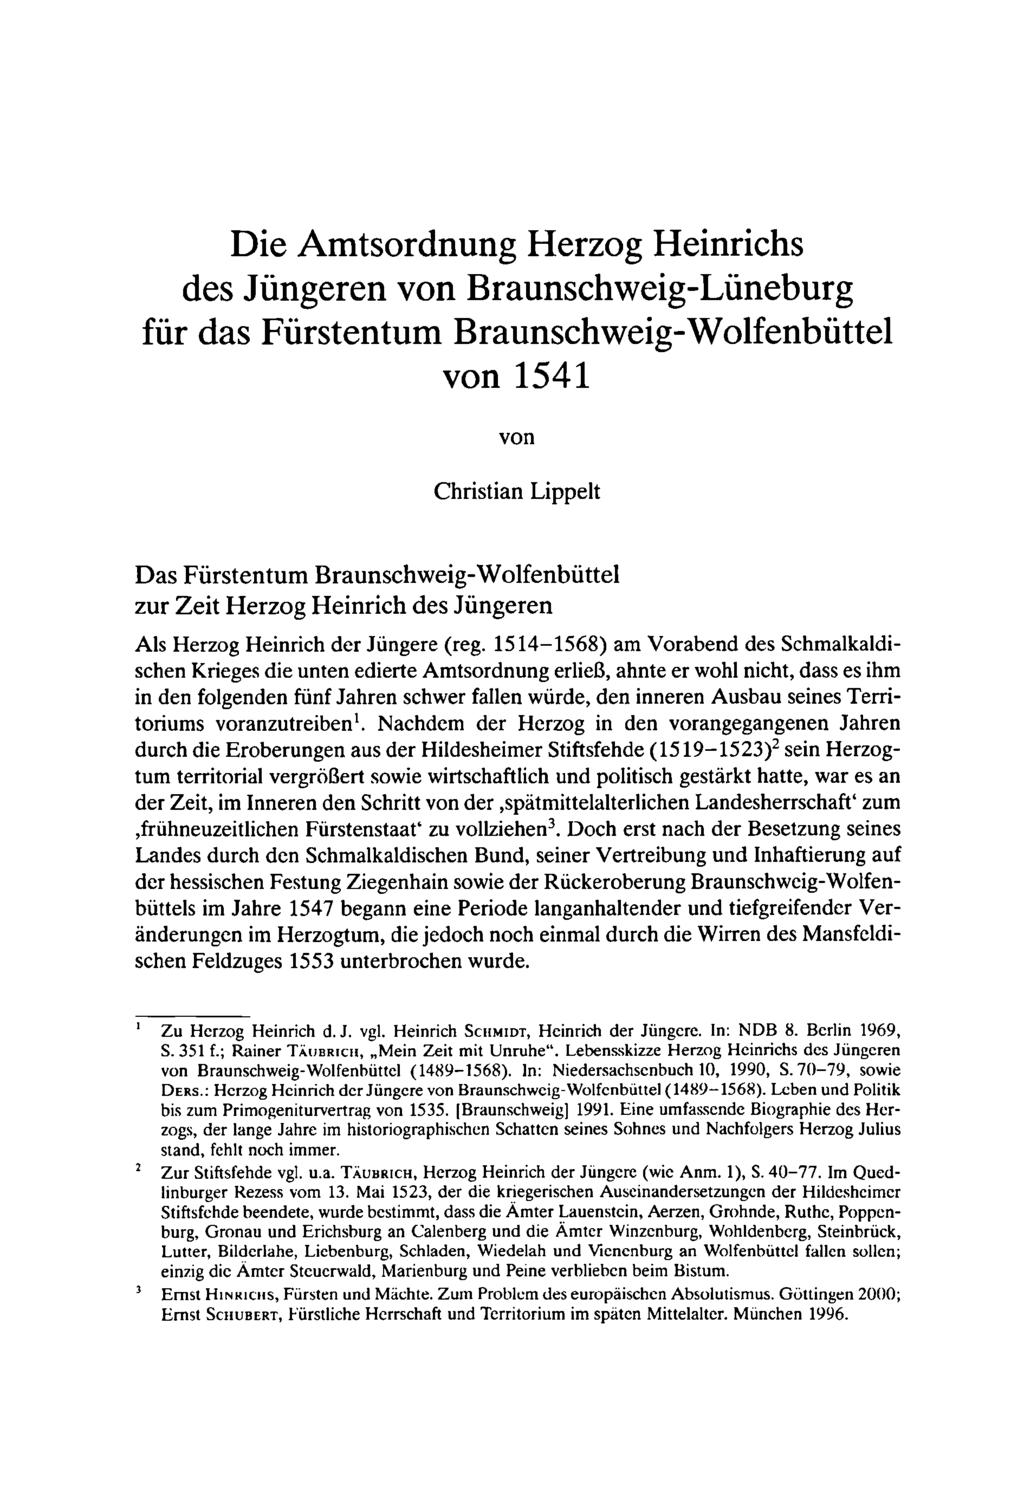 Die Amtsordnung Herzog Heinrichs des Jüngeren von Braunschweig-Lüneburg für das Fürstentum Braunschweig-Wolfenbüttel von 1541 von Christian Lippelt Das Fürstentum Braunschweig-Wolfenbüttel zur Zeit